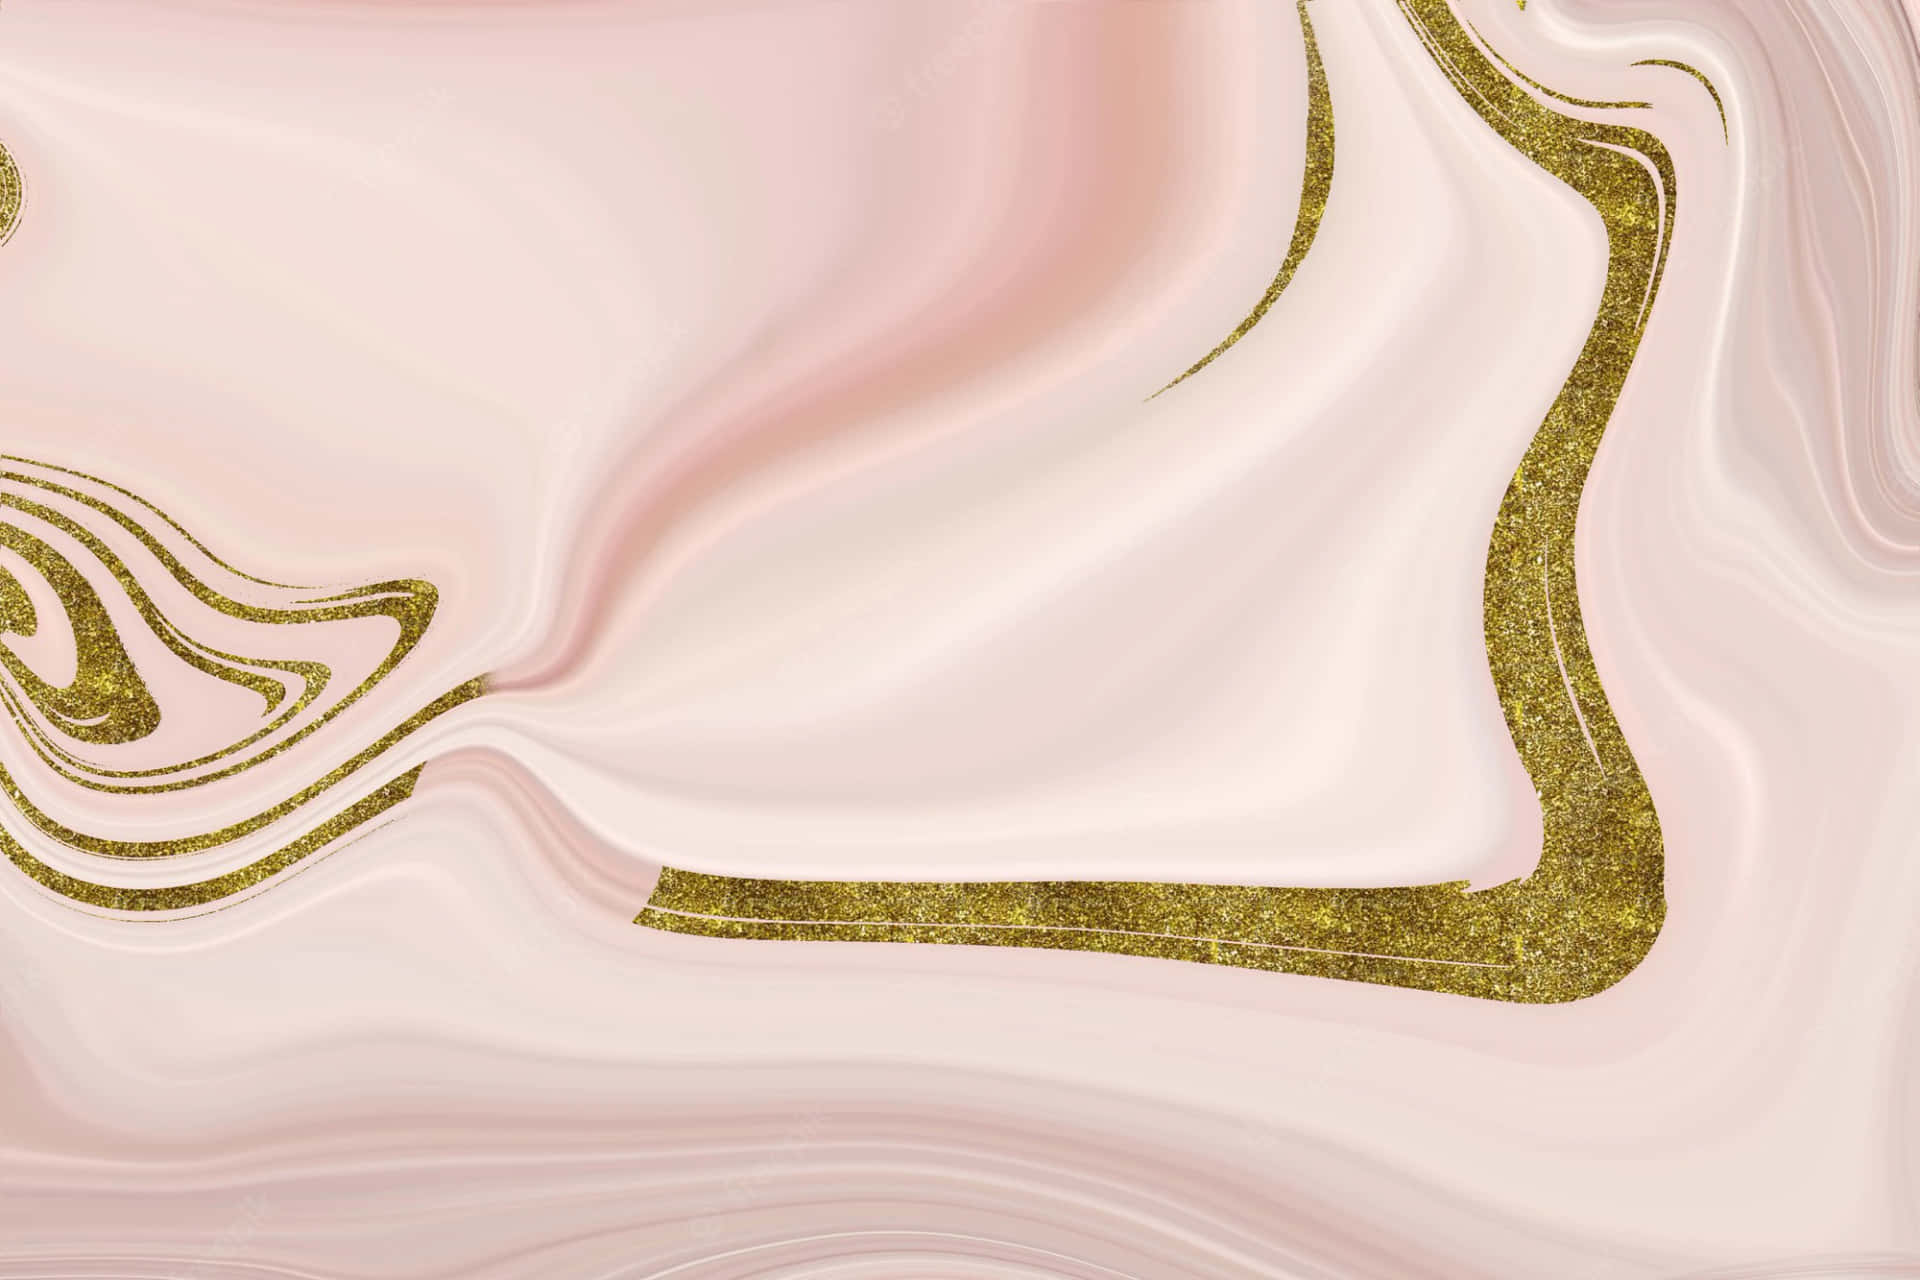 Sanftund Elegant In Hellem Pink Und Gold Wallpaper